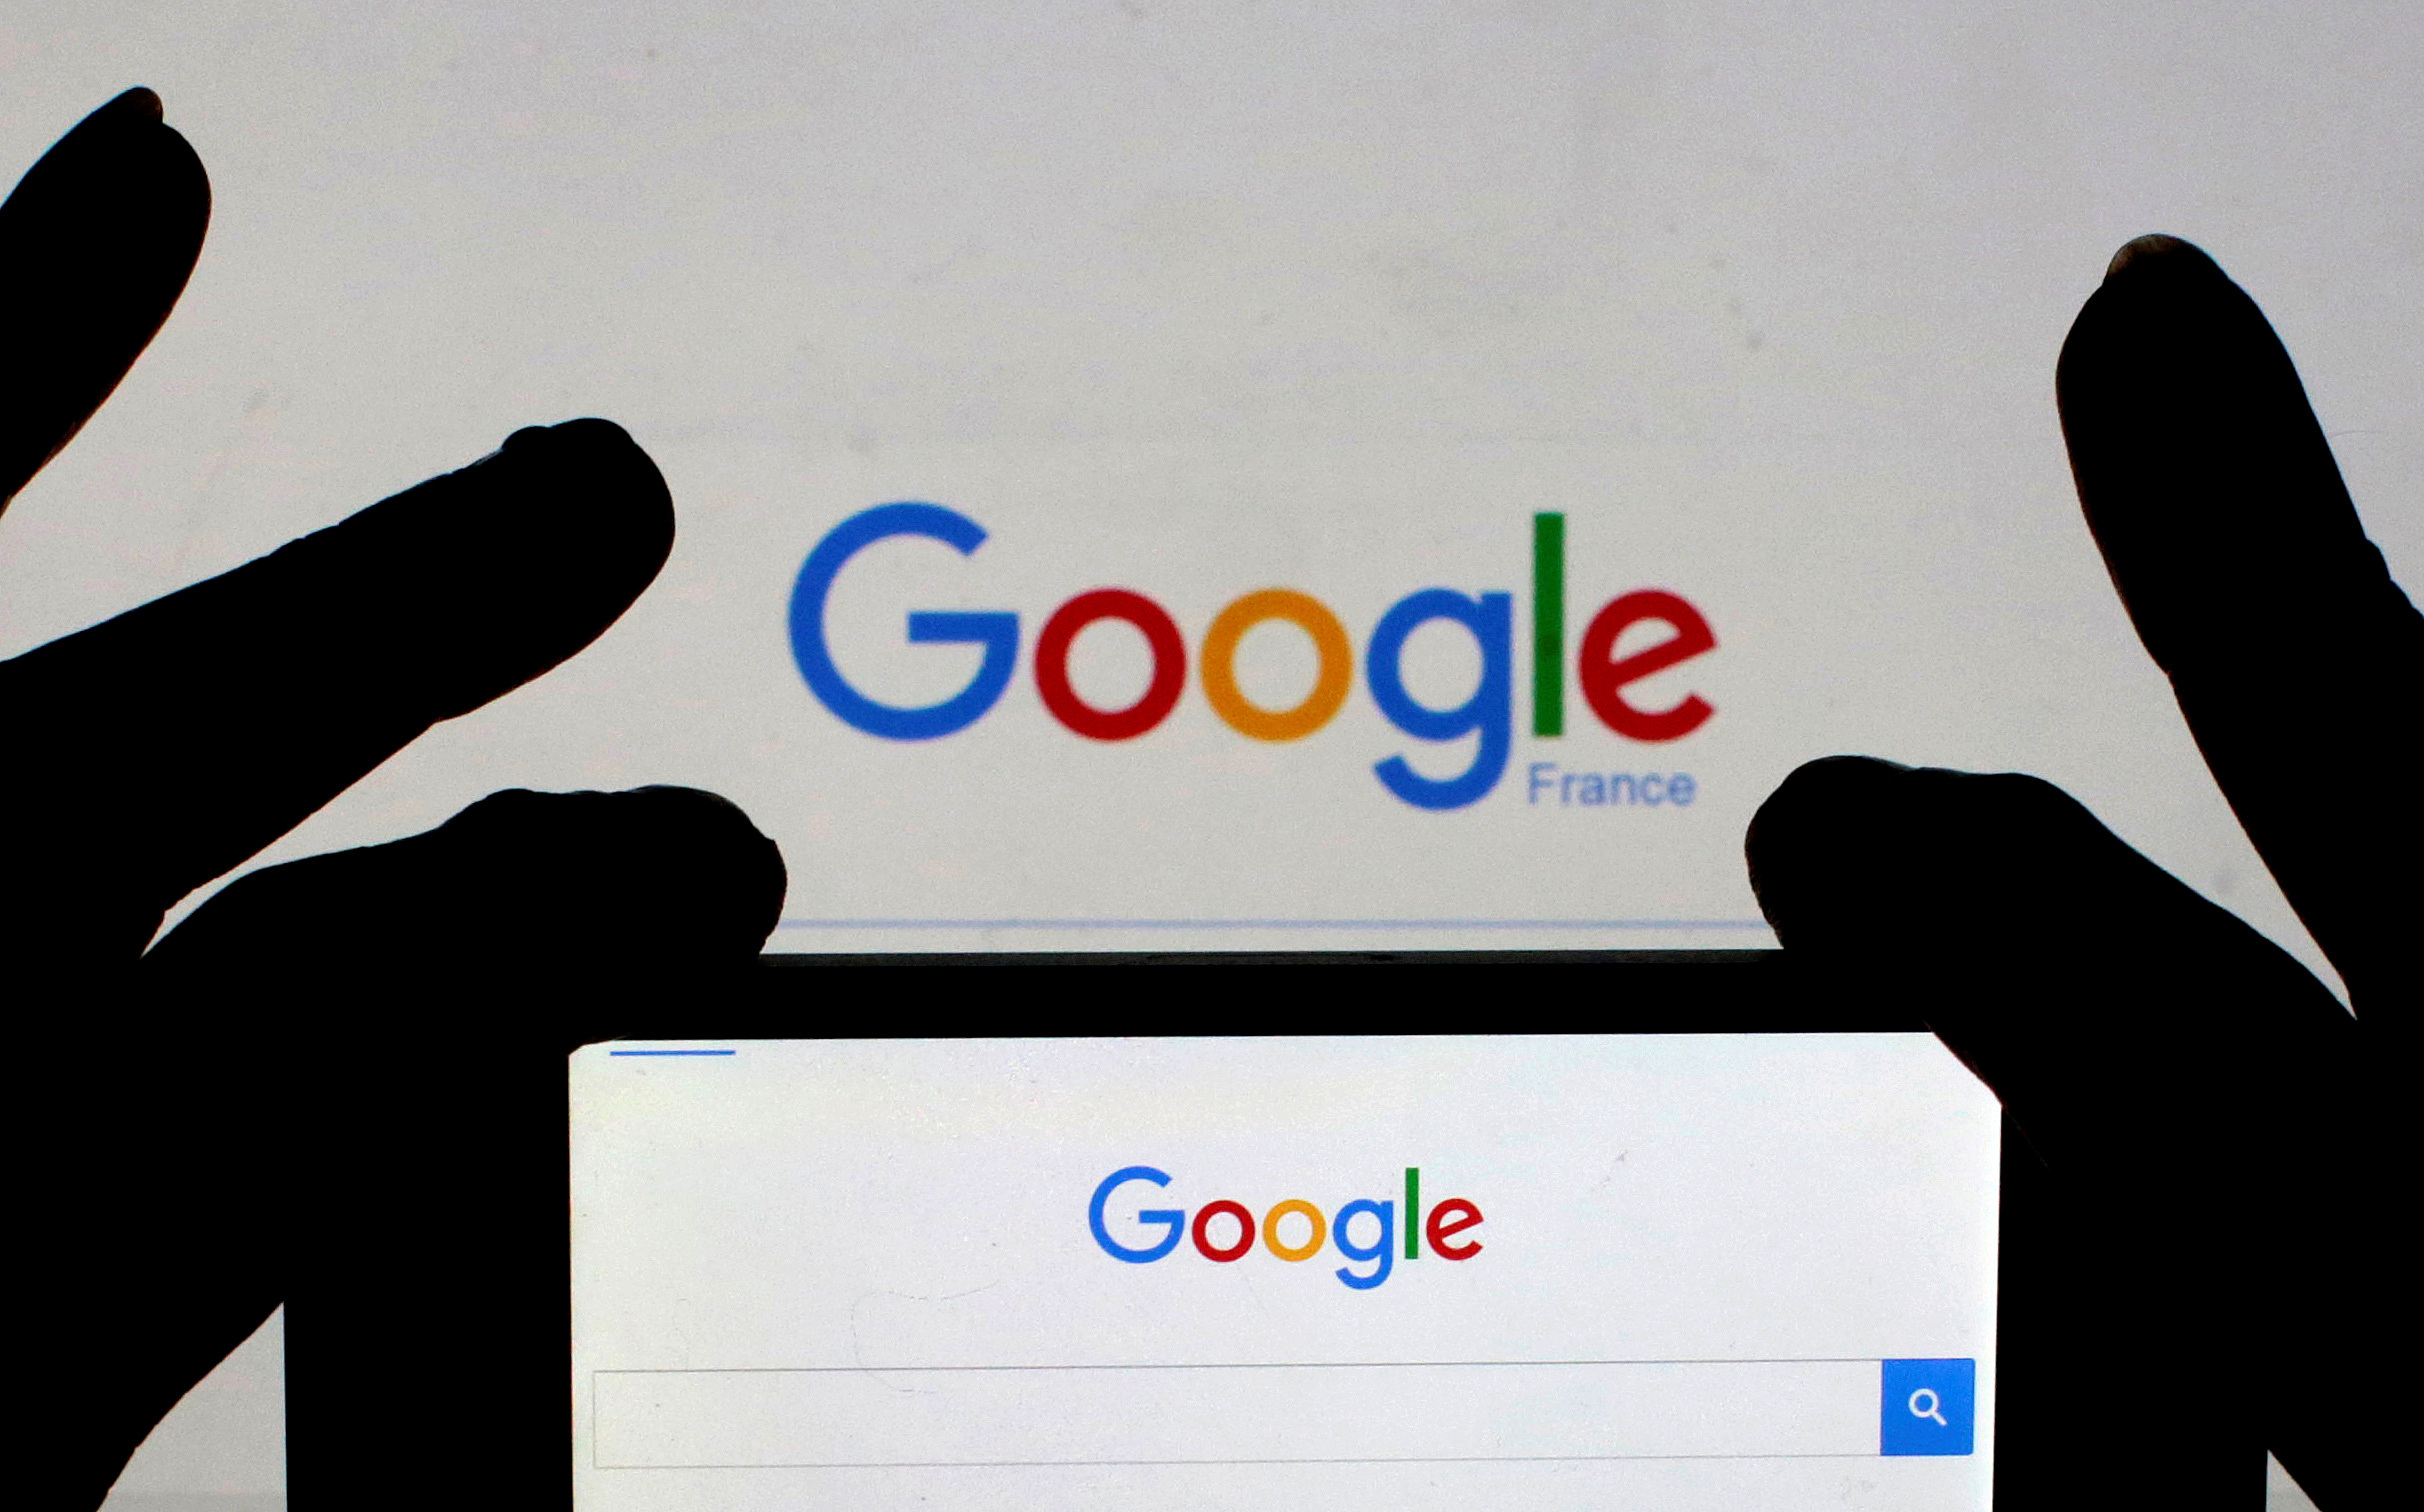 La Corée du Sud inflige une amende de 31,9 millions de dollars à Google pour concurrence déloyale